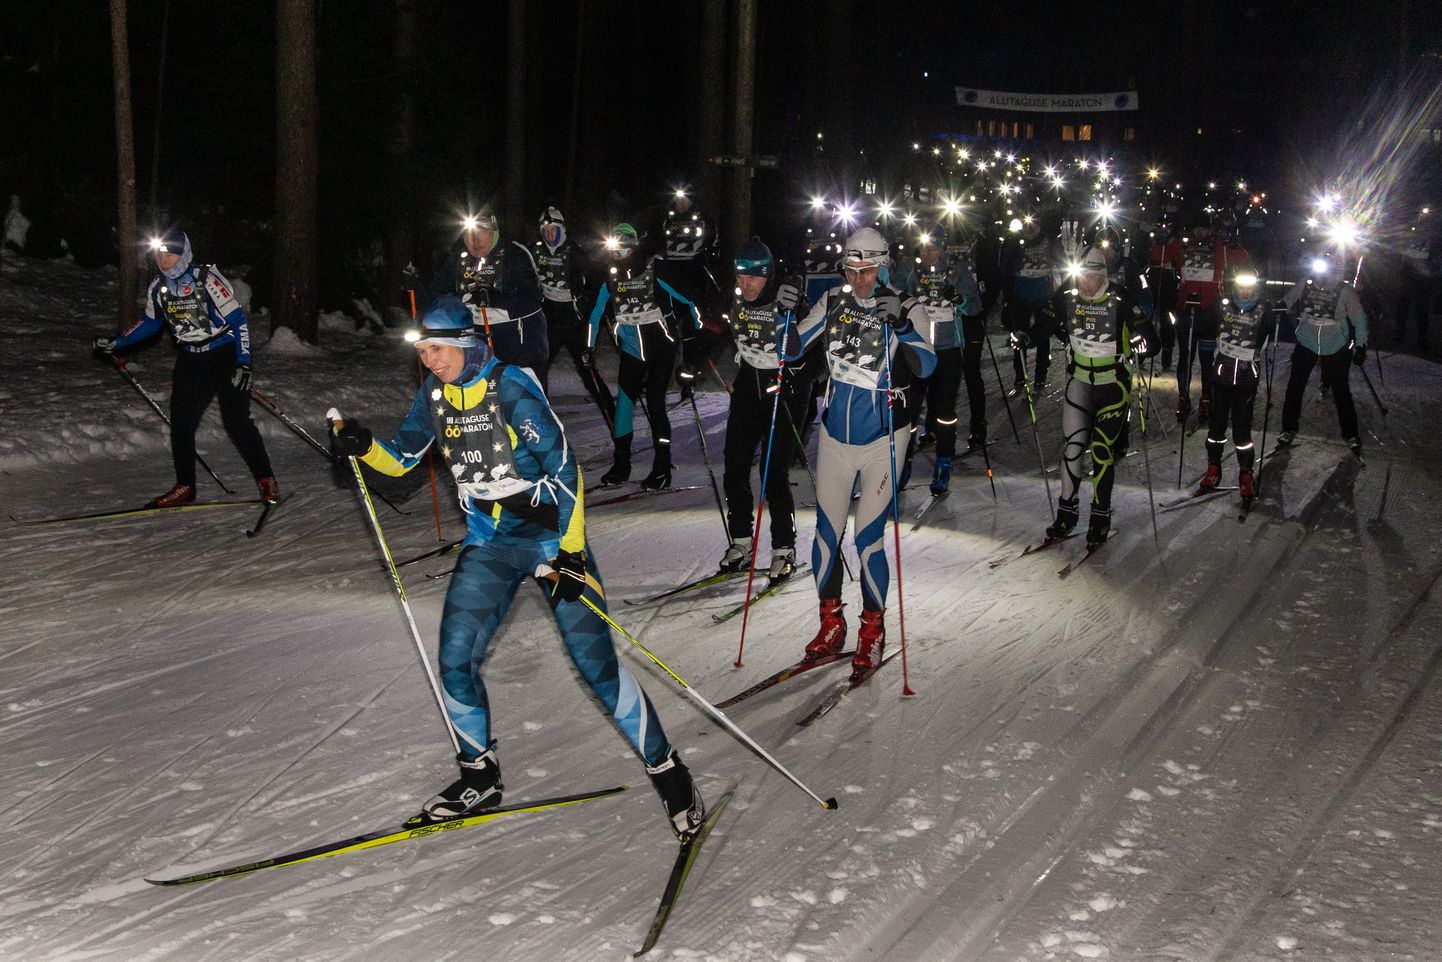 Alutaguse maratoni programm algab reede, 9. veebruari õhtul öömaratoniga, millel on korduvalt osalenud ka president Kersti Kaljulaid.